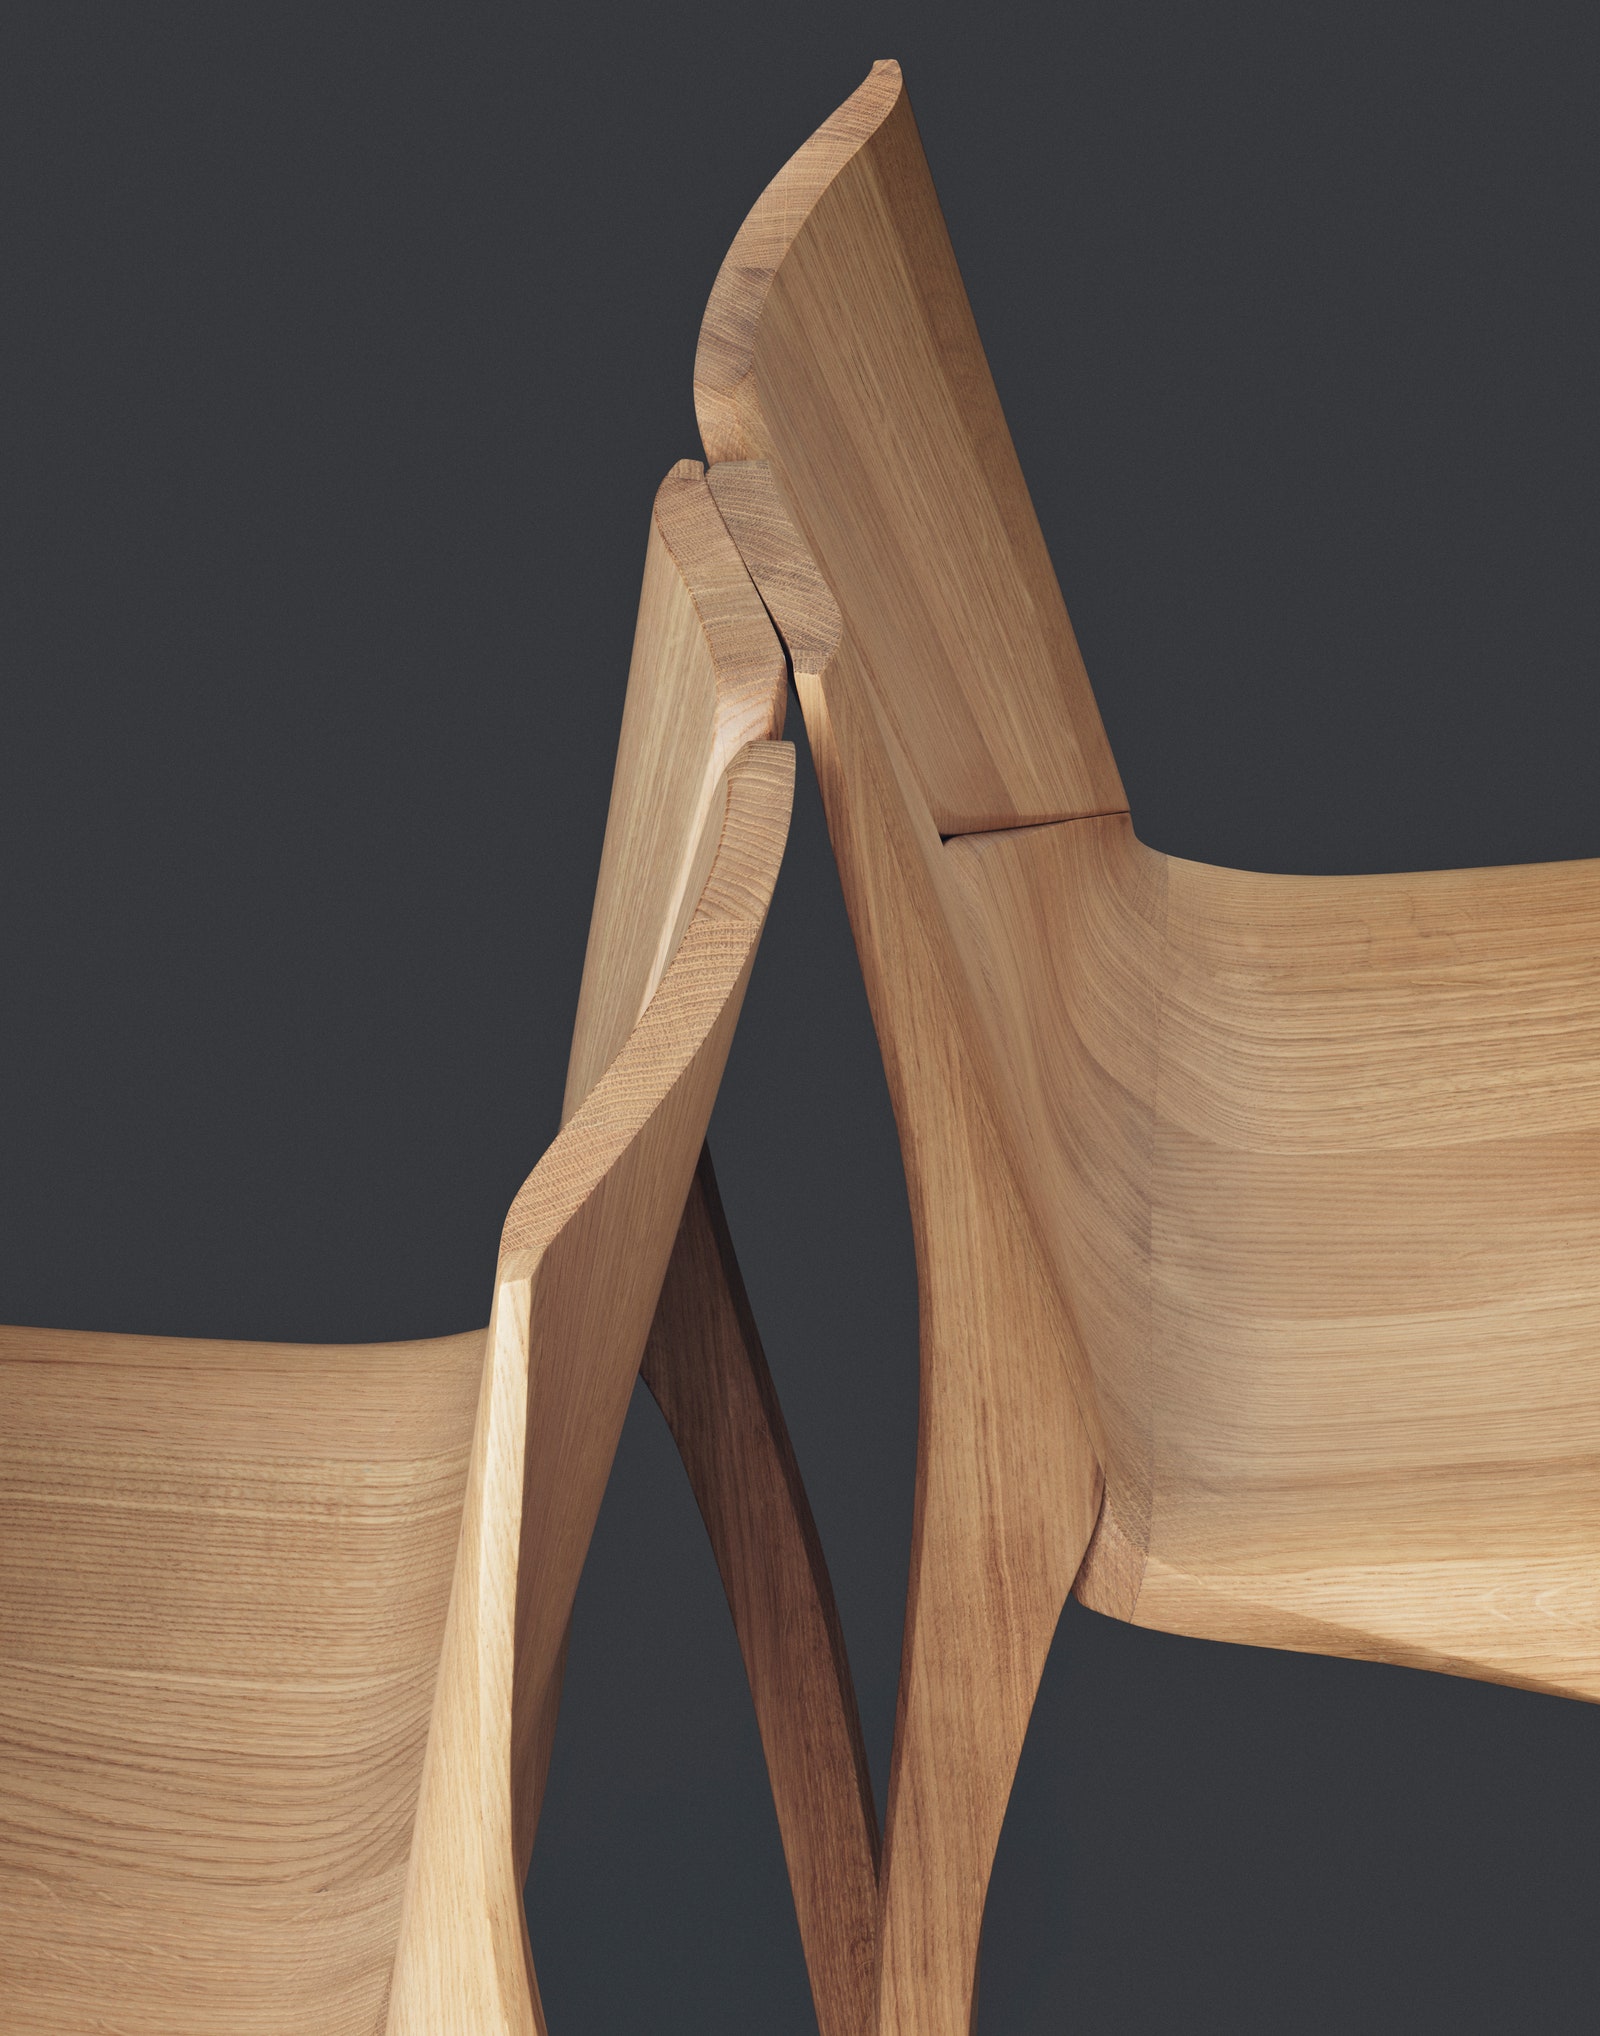 Деревянная мебель по дизайну Zaha Hadid Design